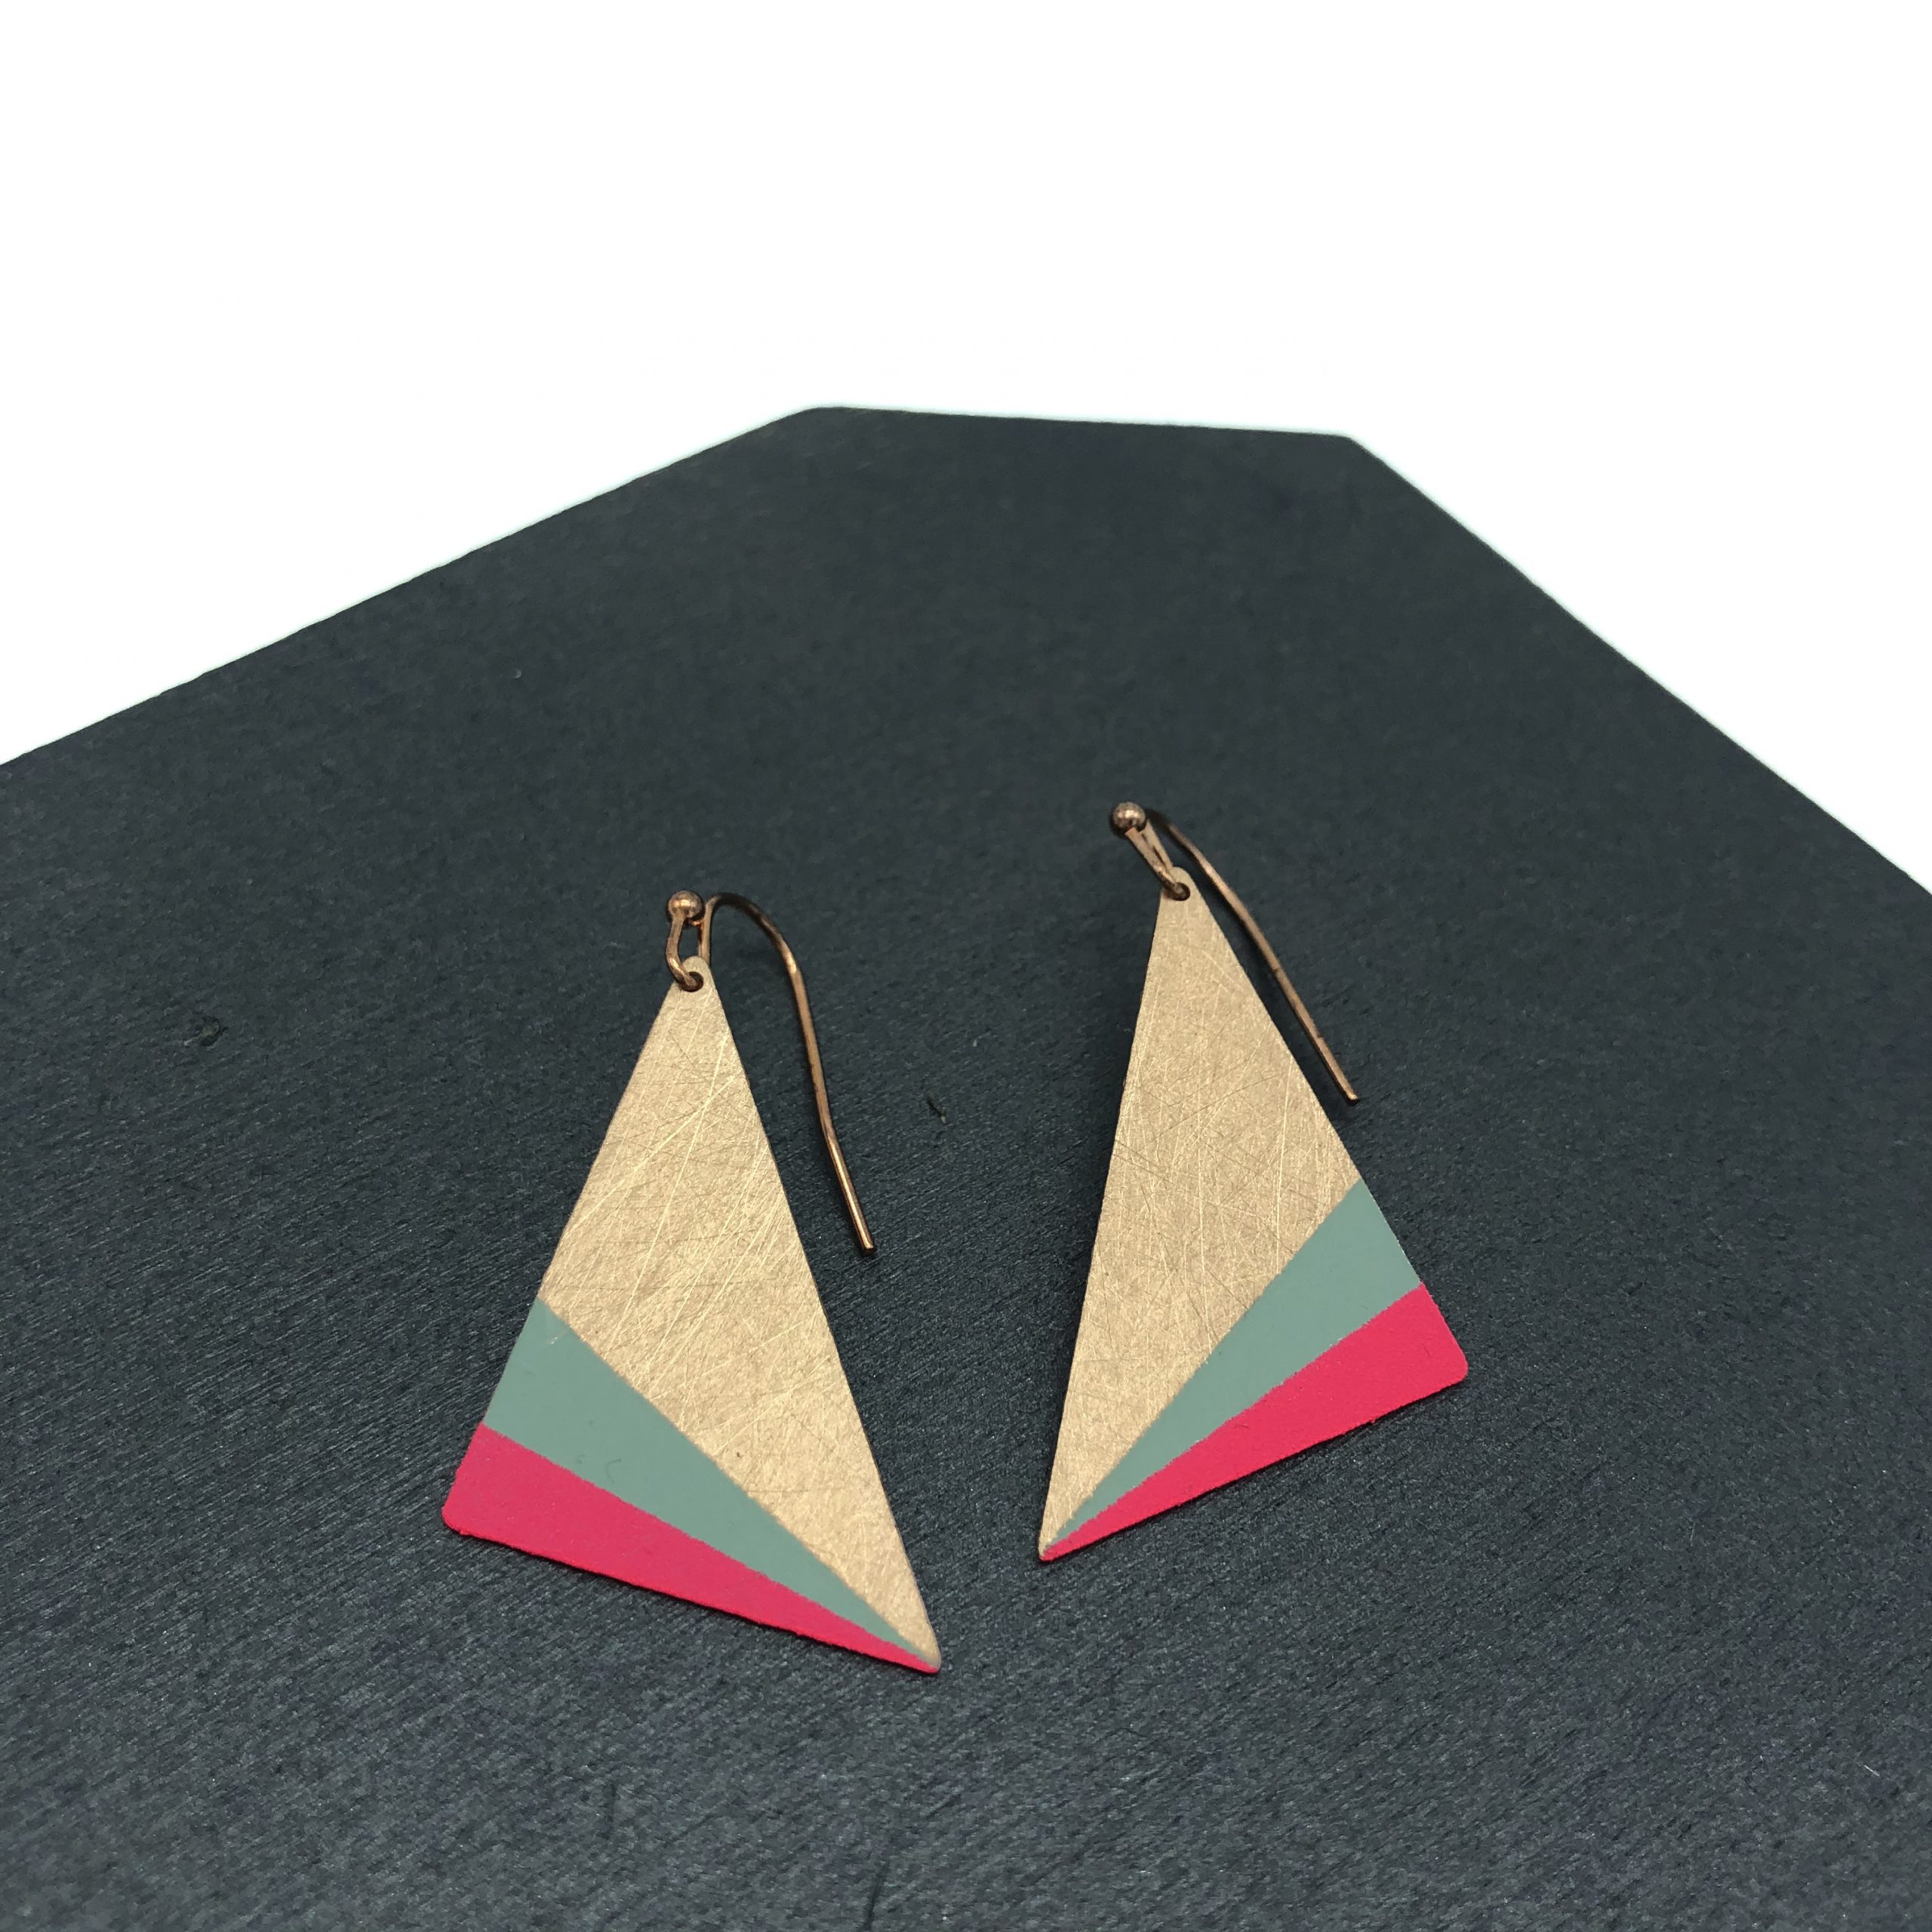 Geometrische Ohrringe von Ruby on Tuesday. Dreiecke in verschiedenen Farbkombinationen